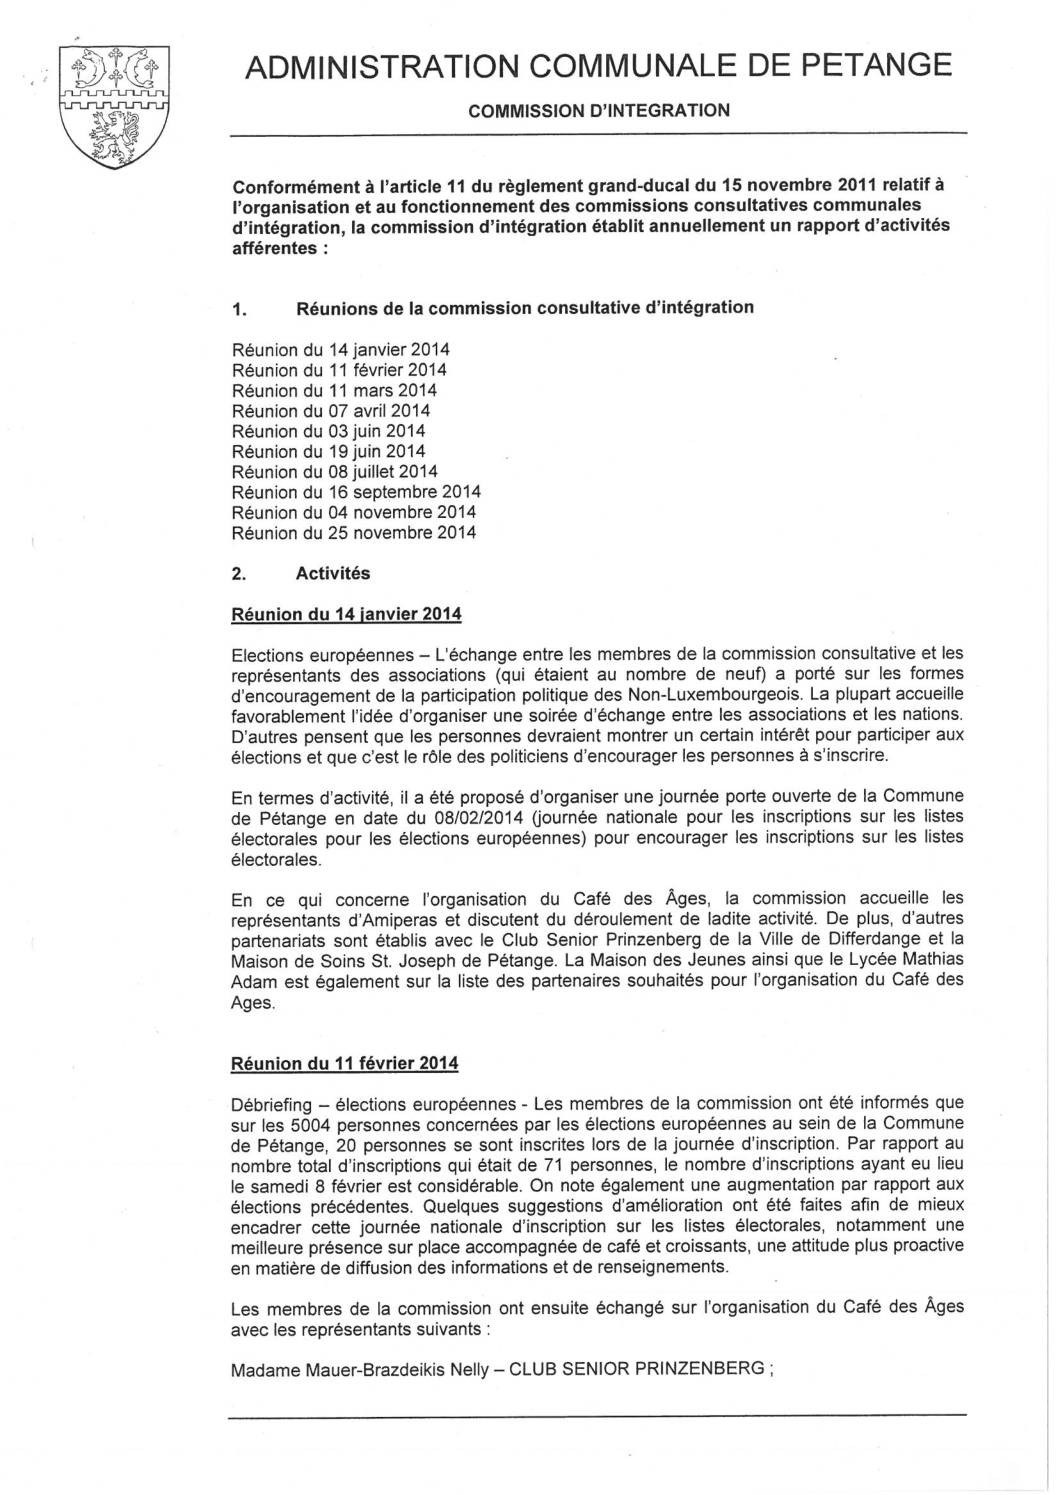 Commission d'intégration de la commune de Pétange - Rapport annuel 2014